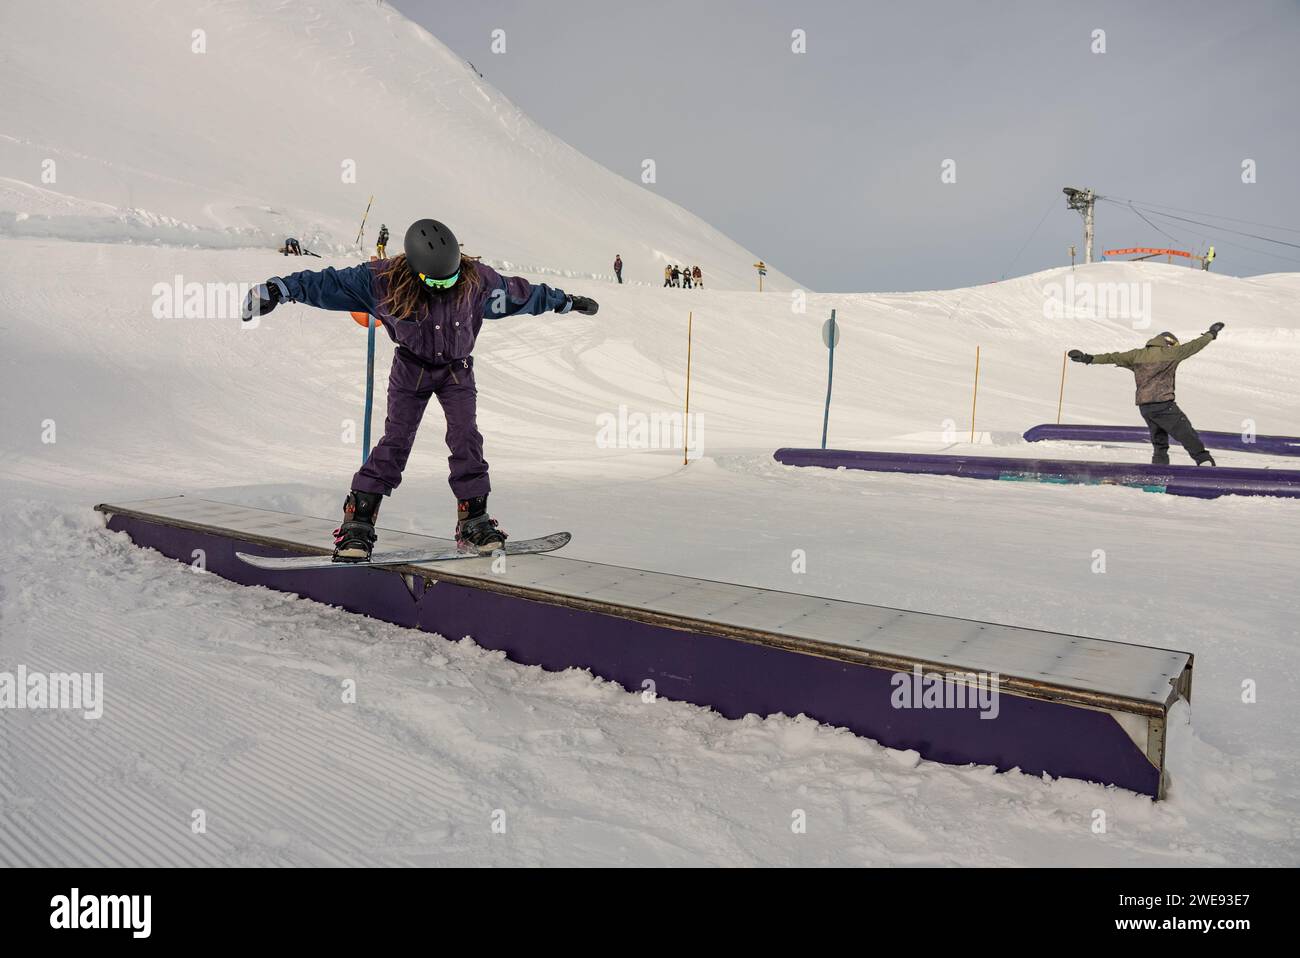 Trucchi per lo Snow Park. Snowboarder nel parco su una scatola. Jibbing invernale nello snwopark in Francia.. Foto Stock